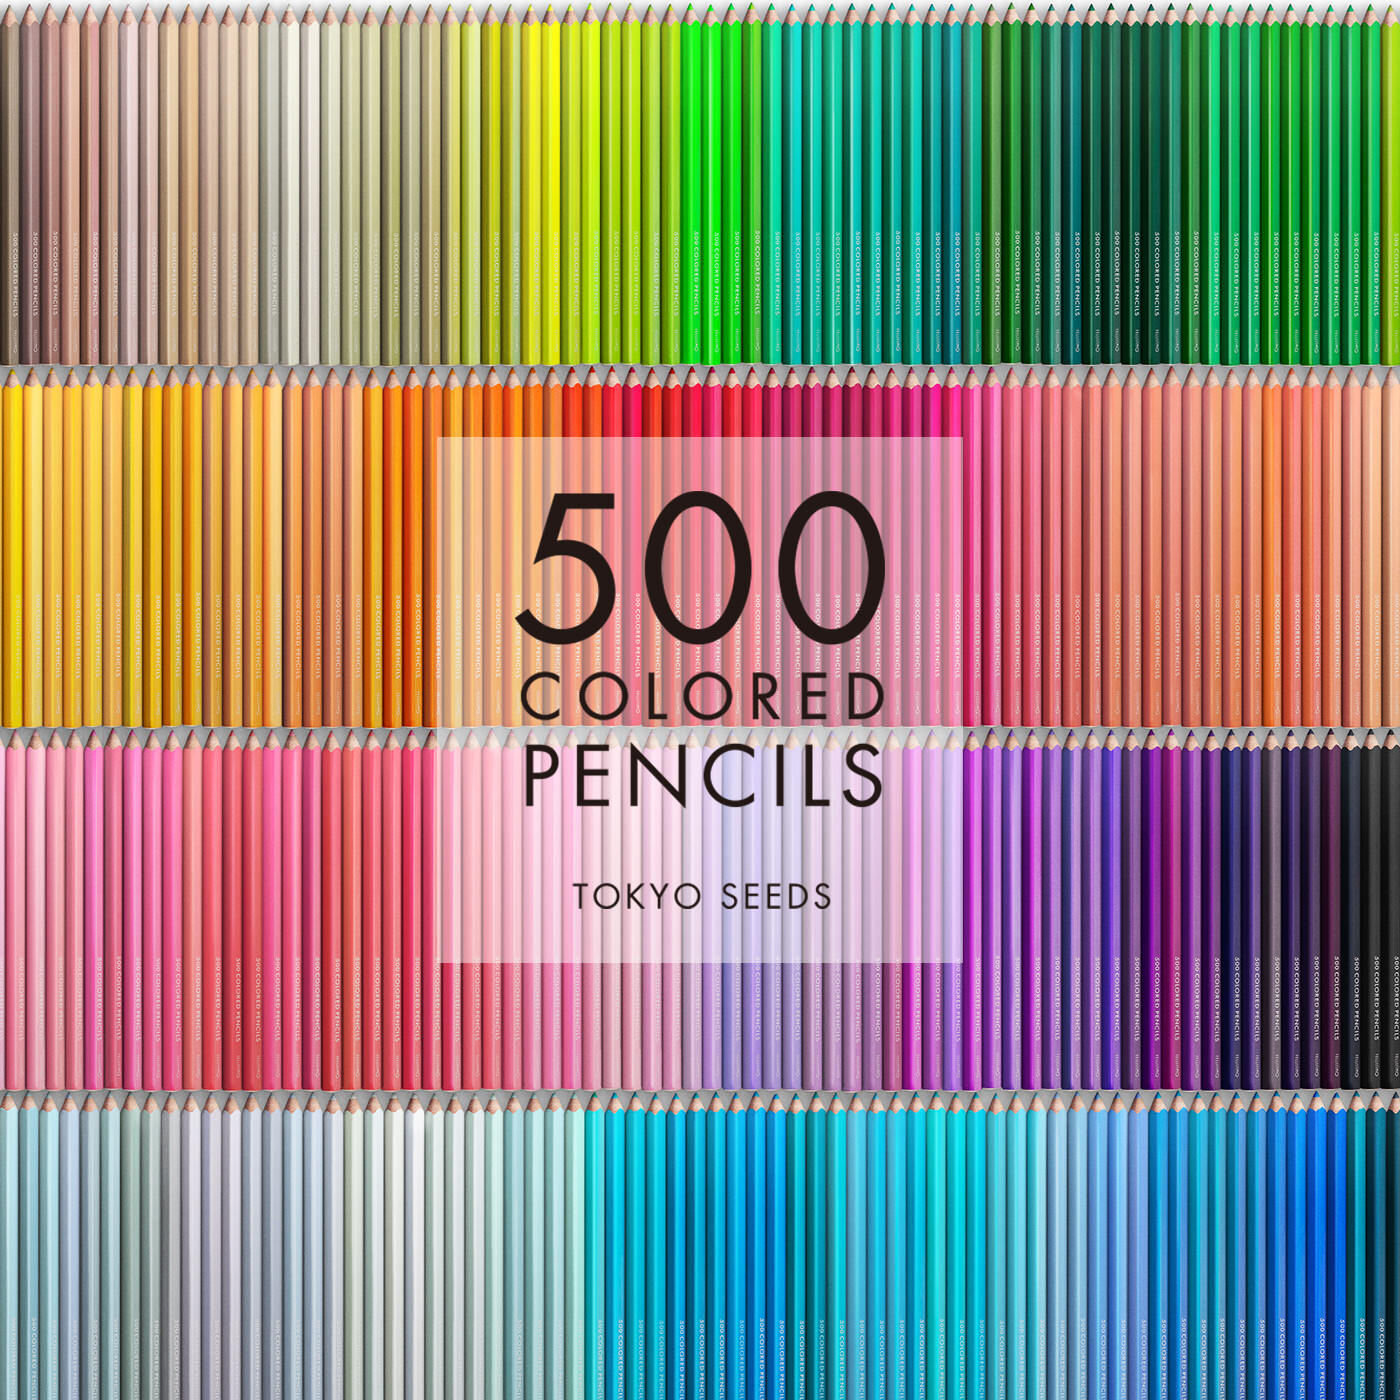 Real Stock|【190/500 WOOLLEN SOCKS】500色の色えんぴつ TOKYO SEEDS|1992年、世界初の「500色」という膨大な色数の色えんぴつが誕生して以来、その販売数は発売当初から合わせると、世界55ヵ国10万セット以上。今回、メイド・イン・ジャパンにこだわり、すべてが新しく生まれ変わって登場しました。